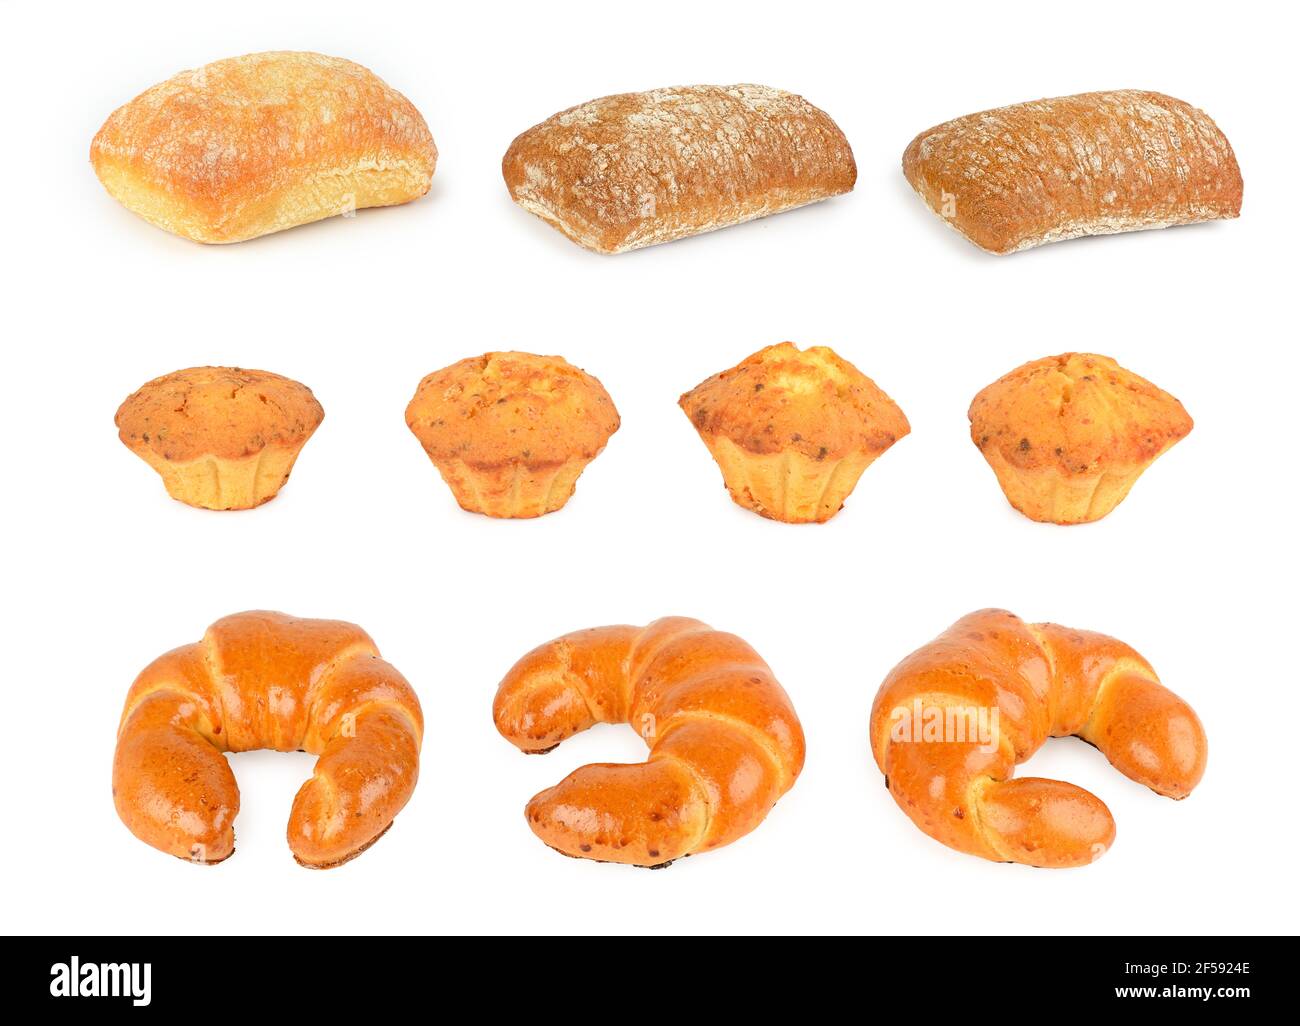 Impostare i prodotti di pane freschi (panini, croissant, ciabatta) isolati su sfondo bianco Foto Stock